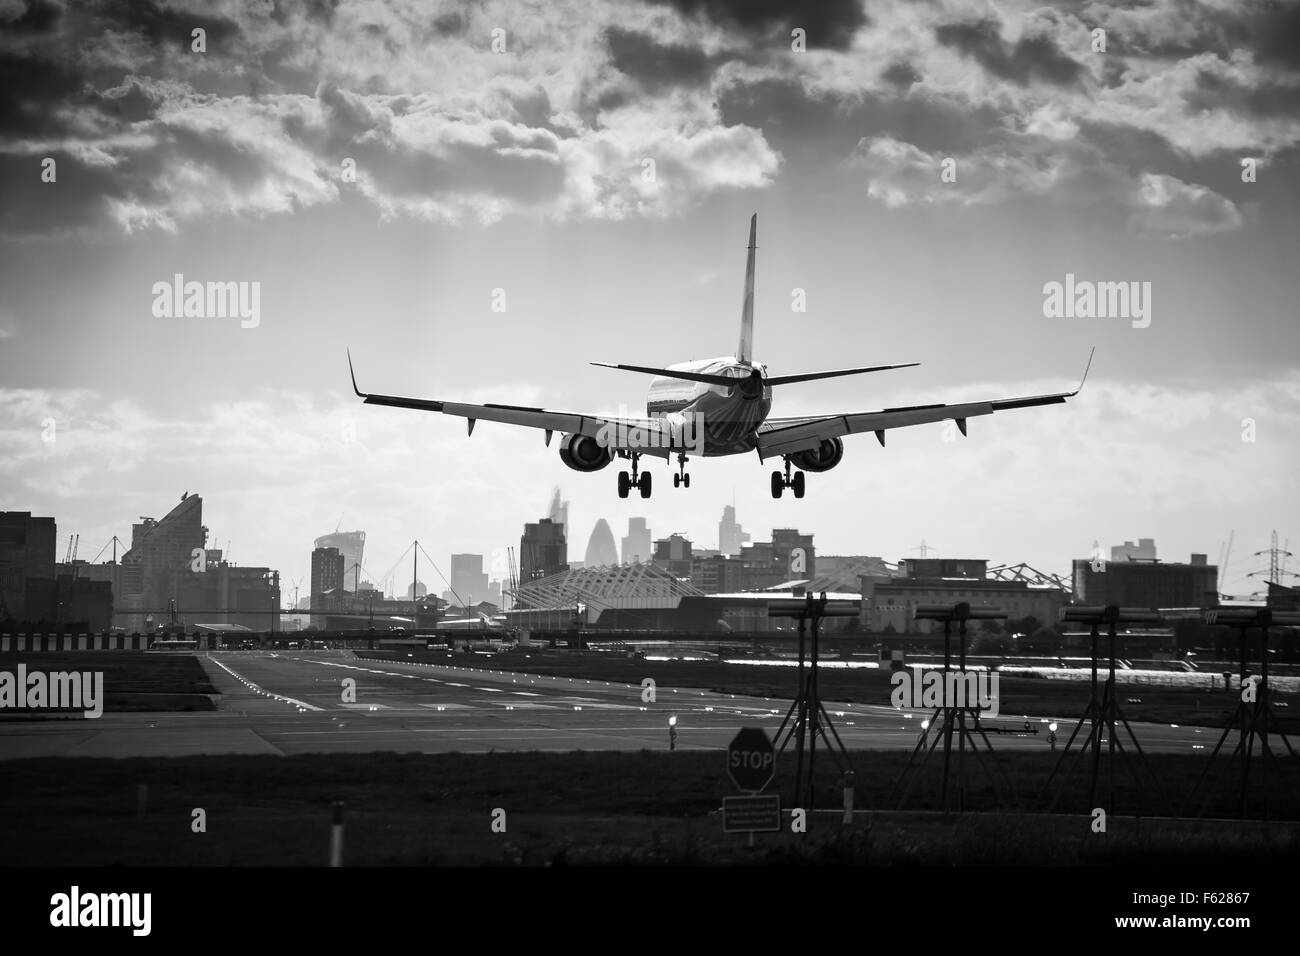 Ein Flugzeug landet auf dem Flughafen London City Airport Stockfoto